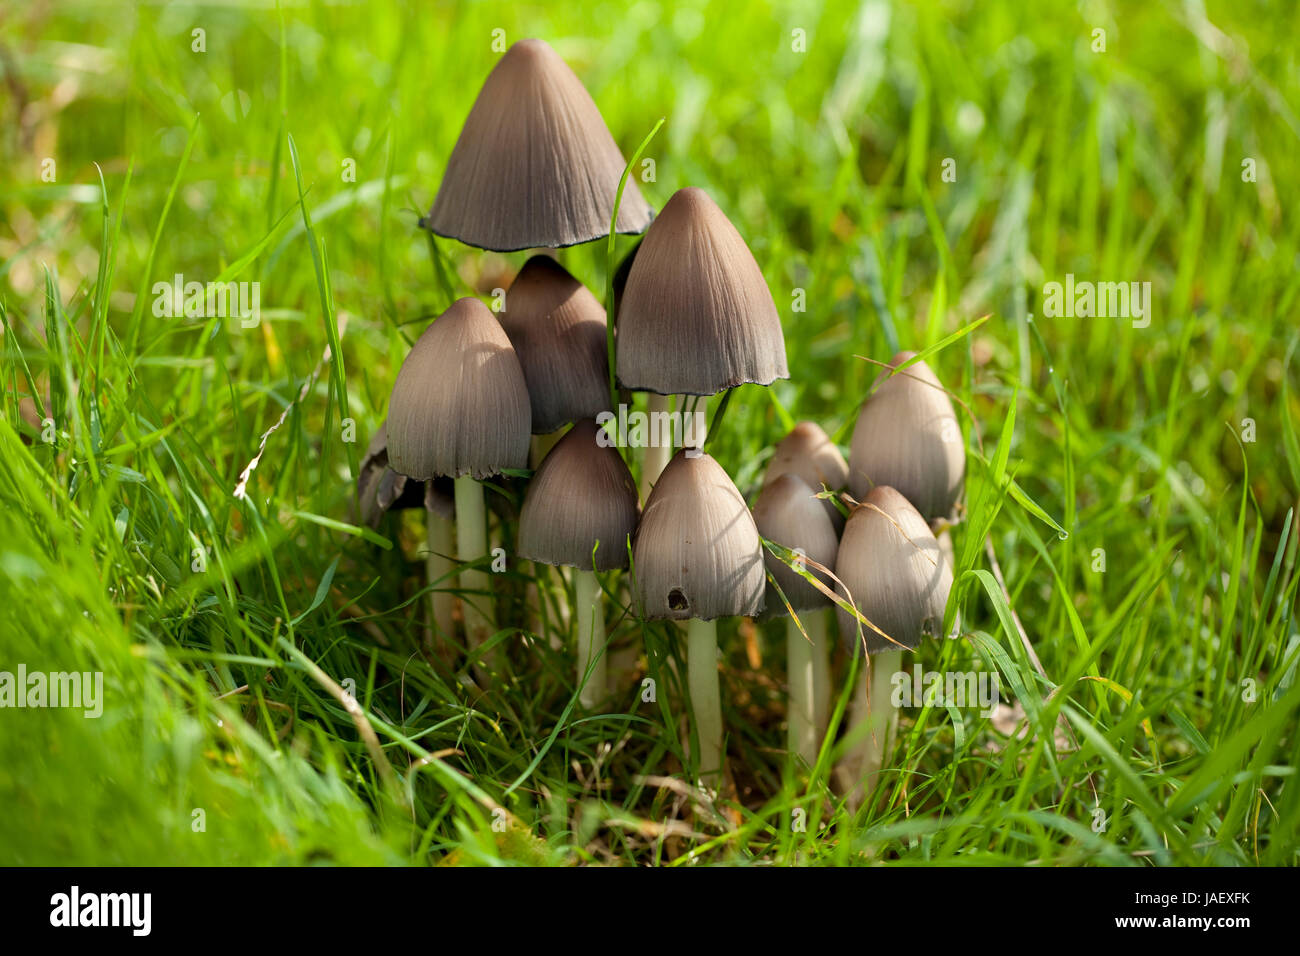 edible mushrooms (Coprinus atramentarius) on grass Stock Photo